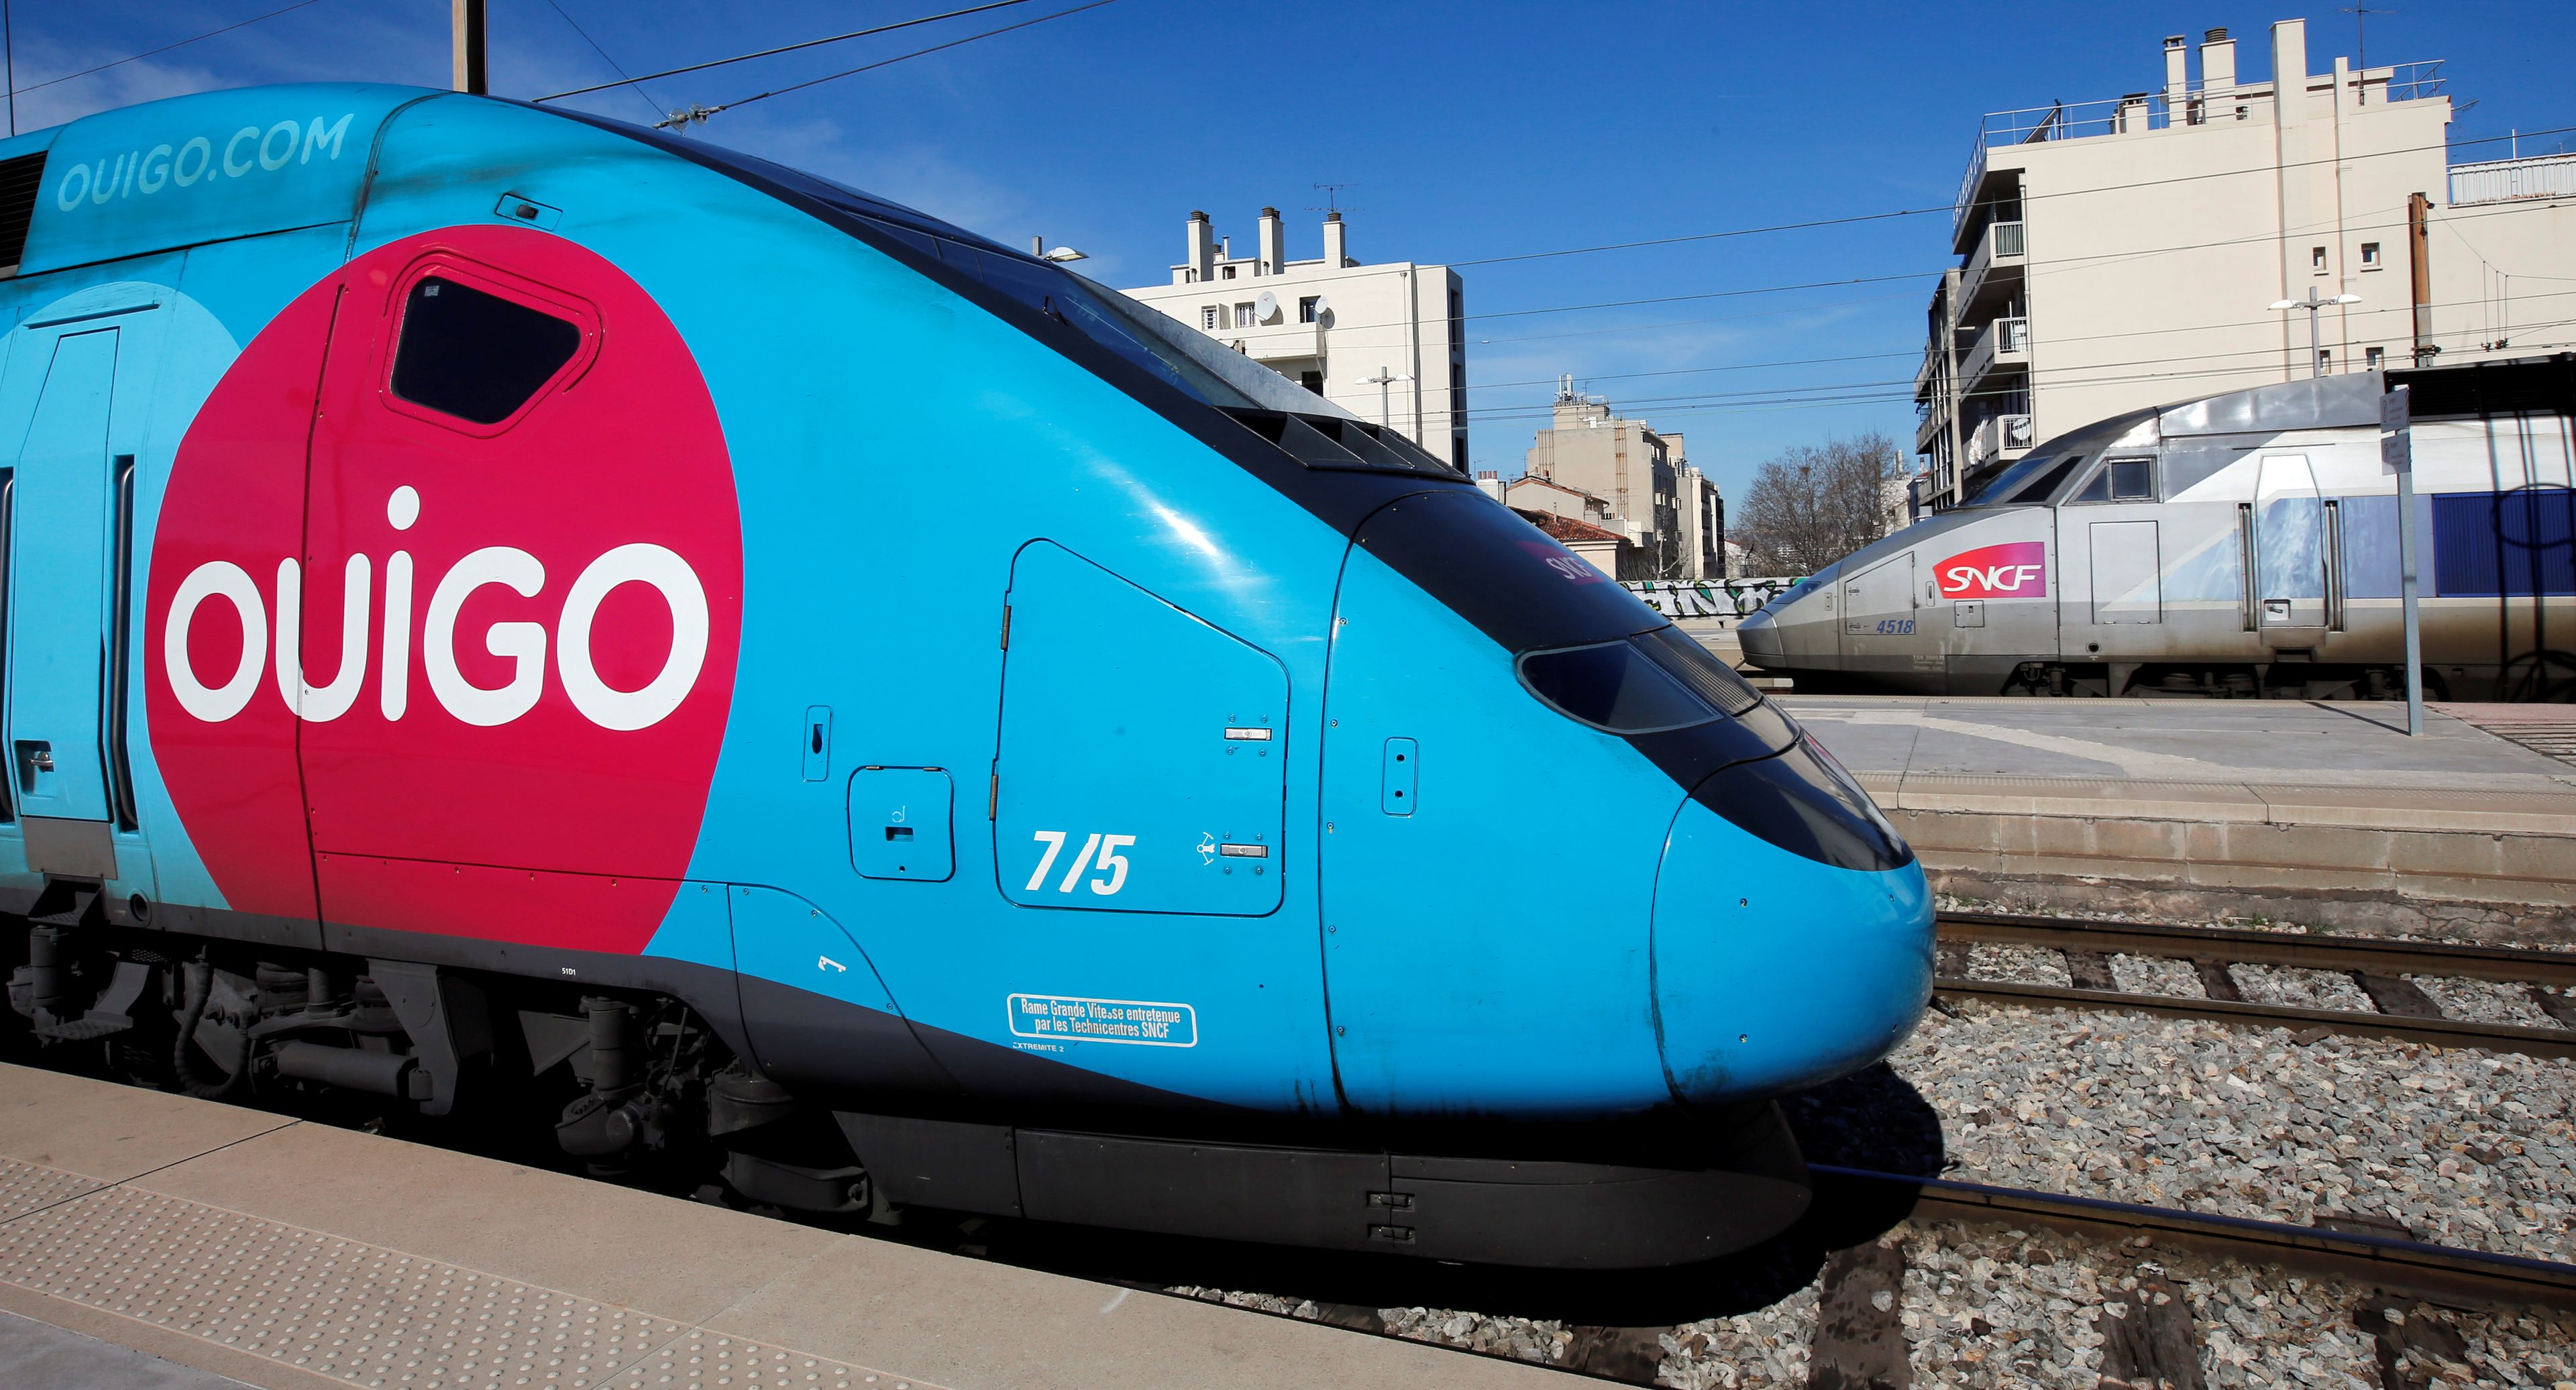 El tren de alta velocidad Ouigo de SNCF